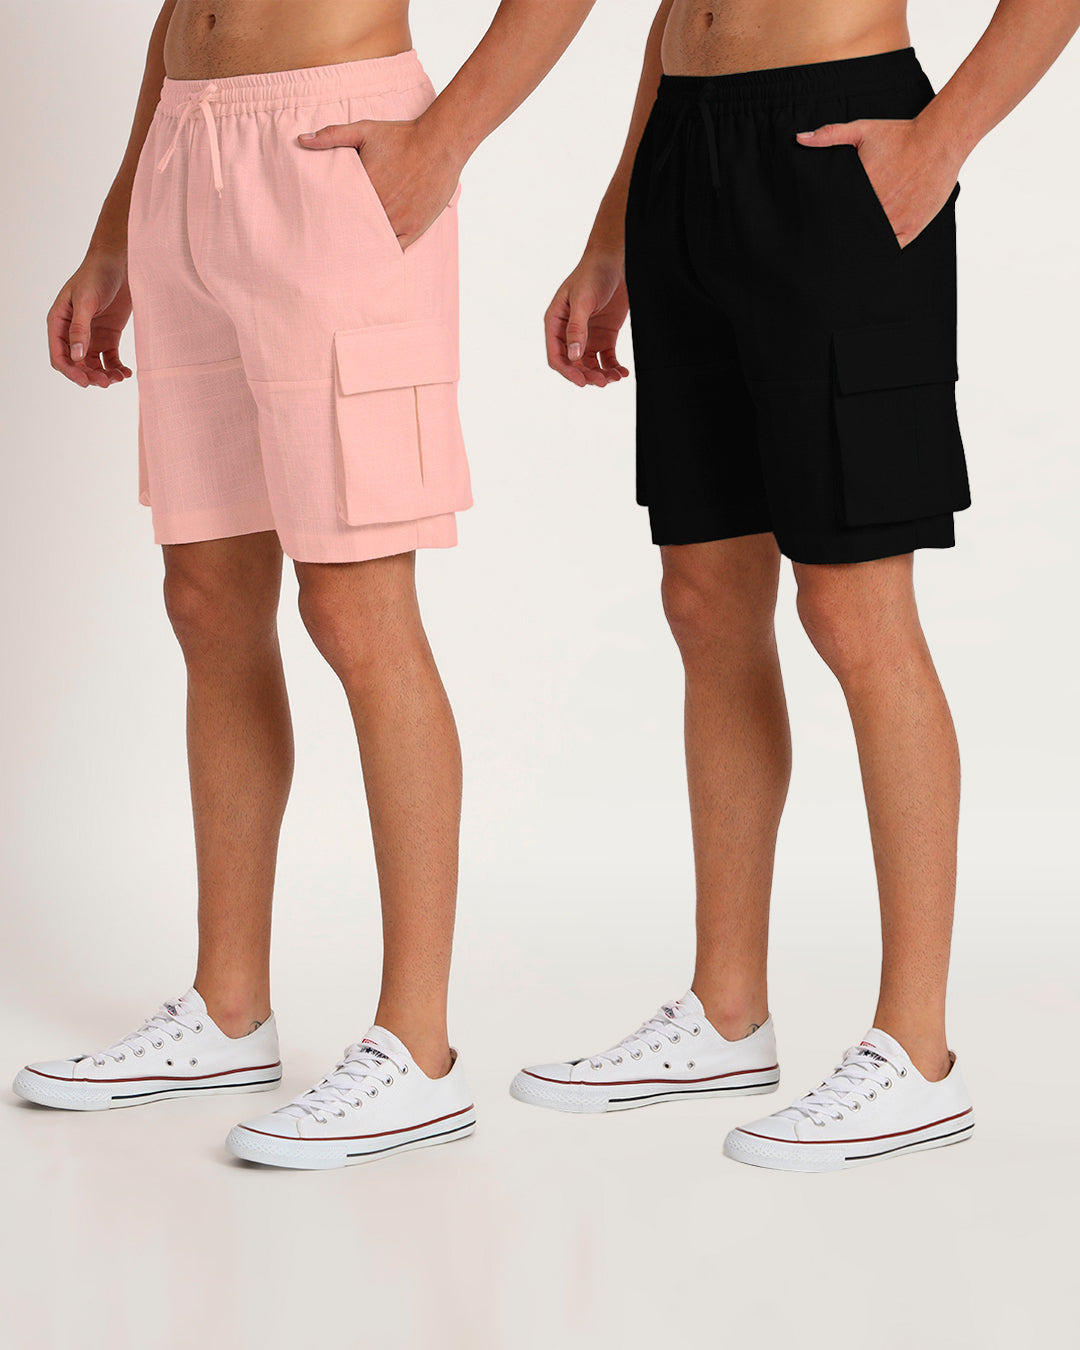 Combo : Slub Comfort Cargo Shorts Black & Fondant Pink Men's Shorts